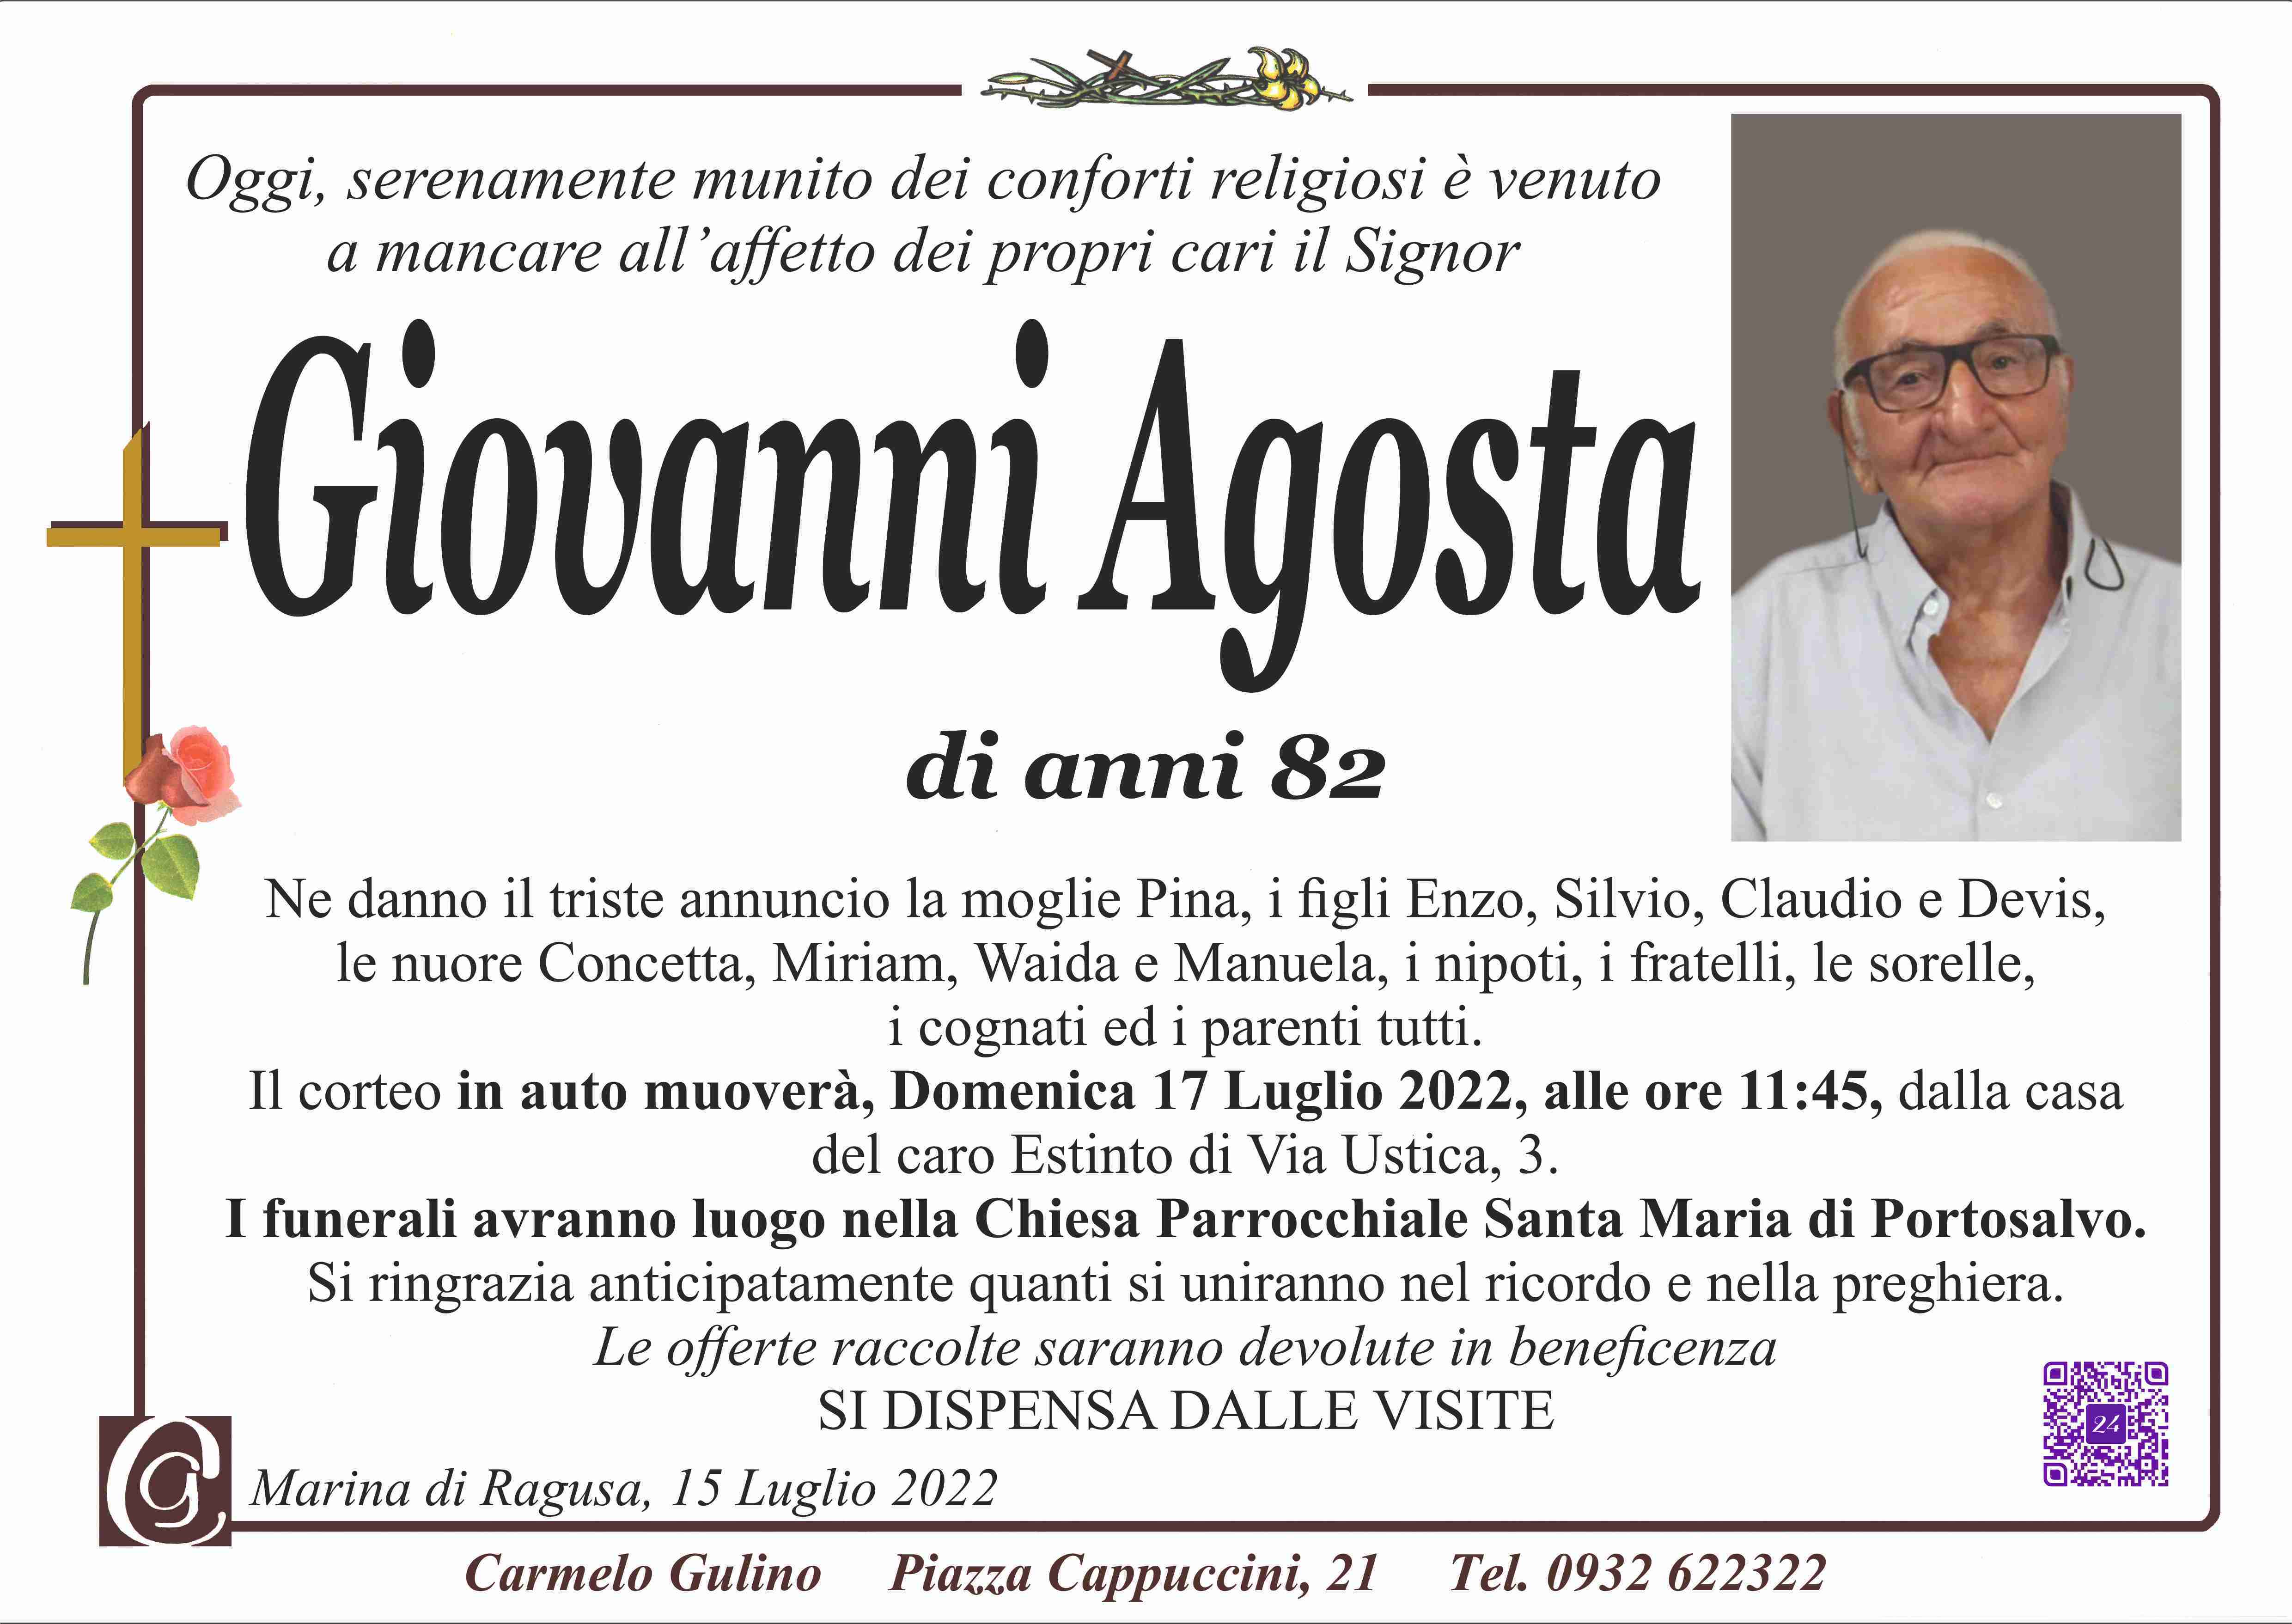 Giovanni Agosta